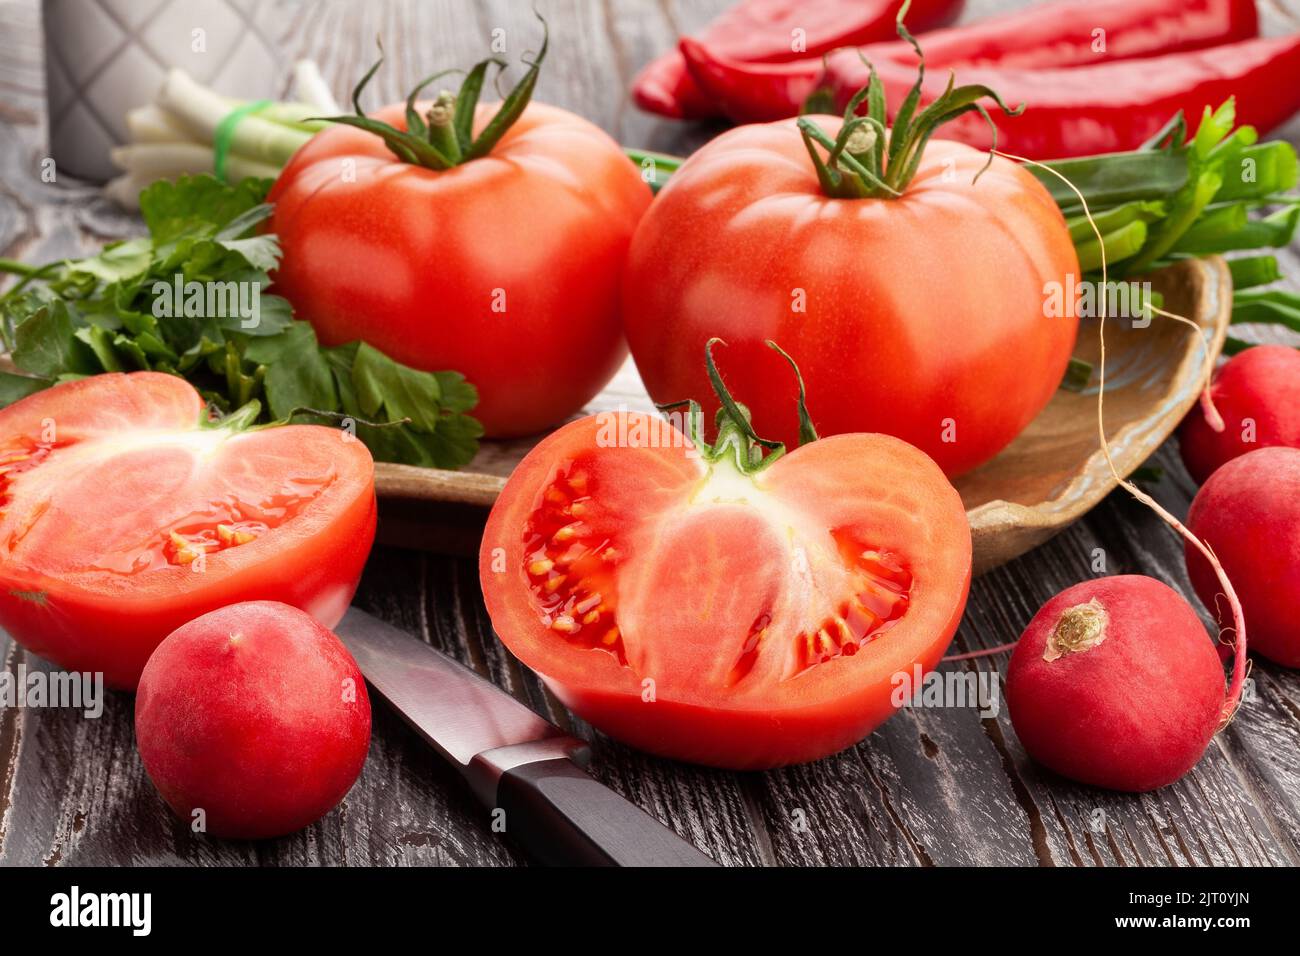 sliced tomato on wood background Stock Photo